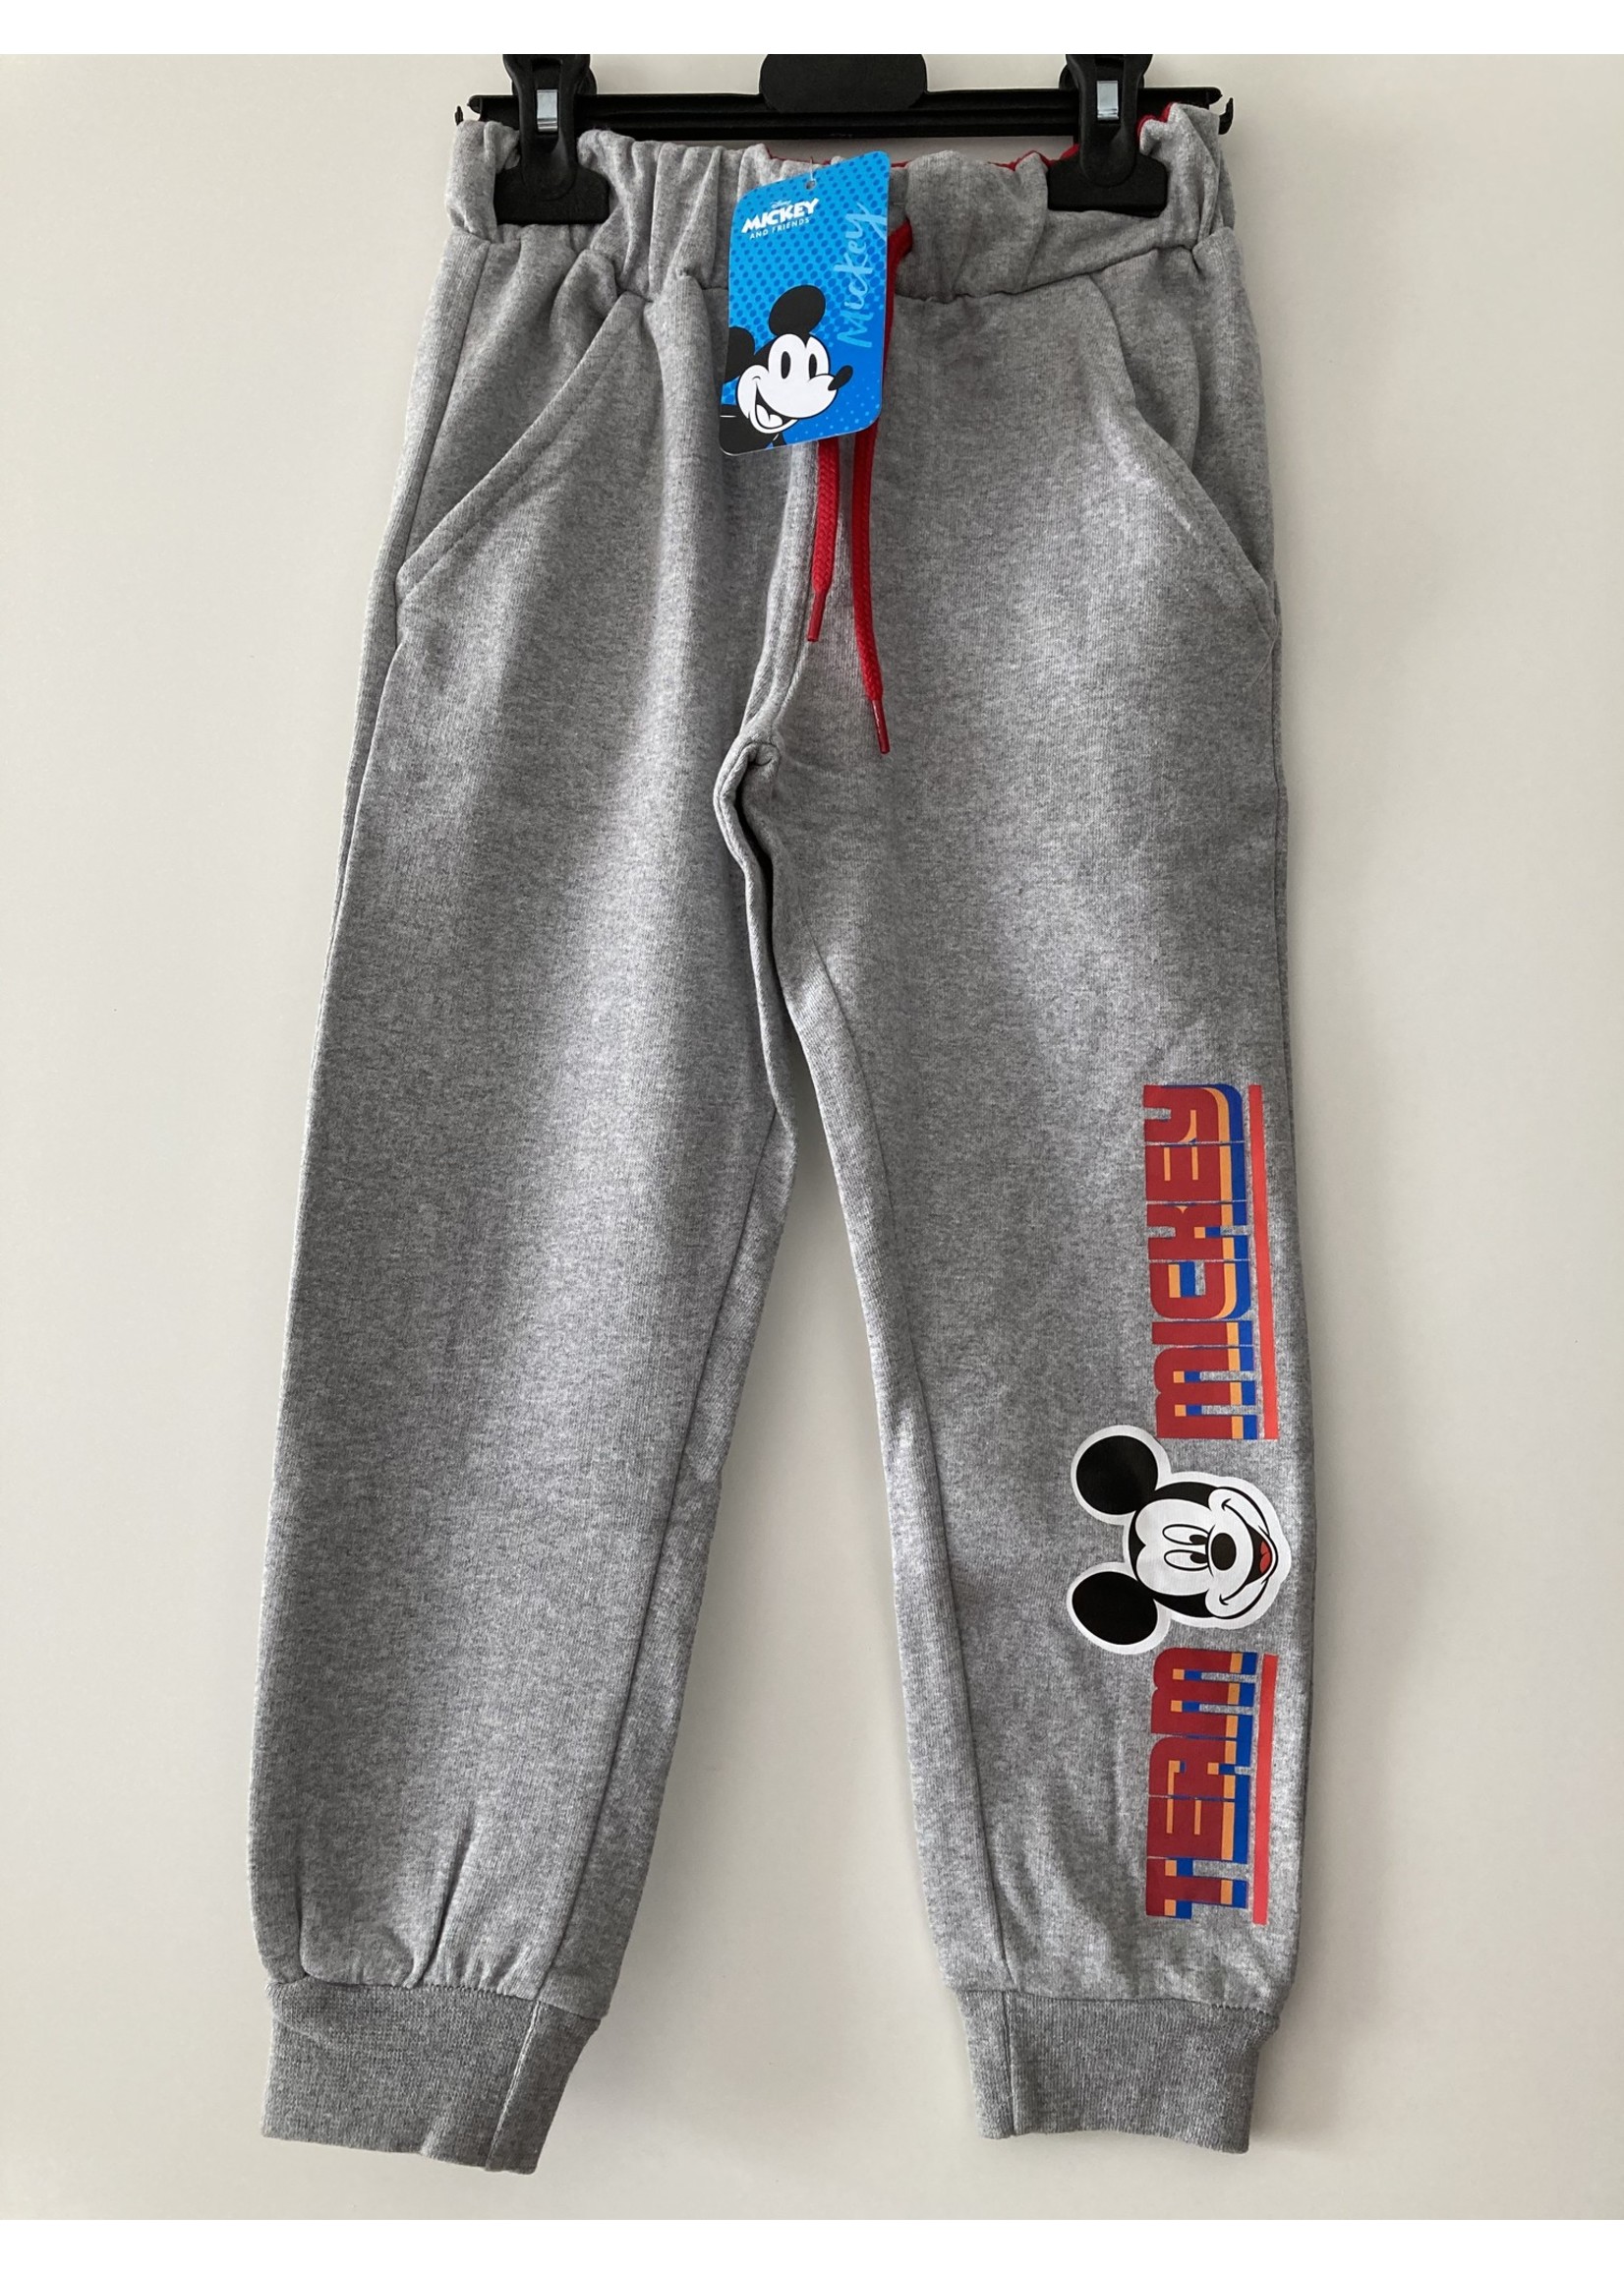 Disney Mickey Mouse joggingbroek van Disney grijs